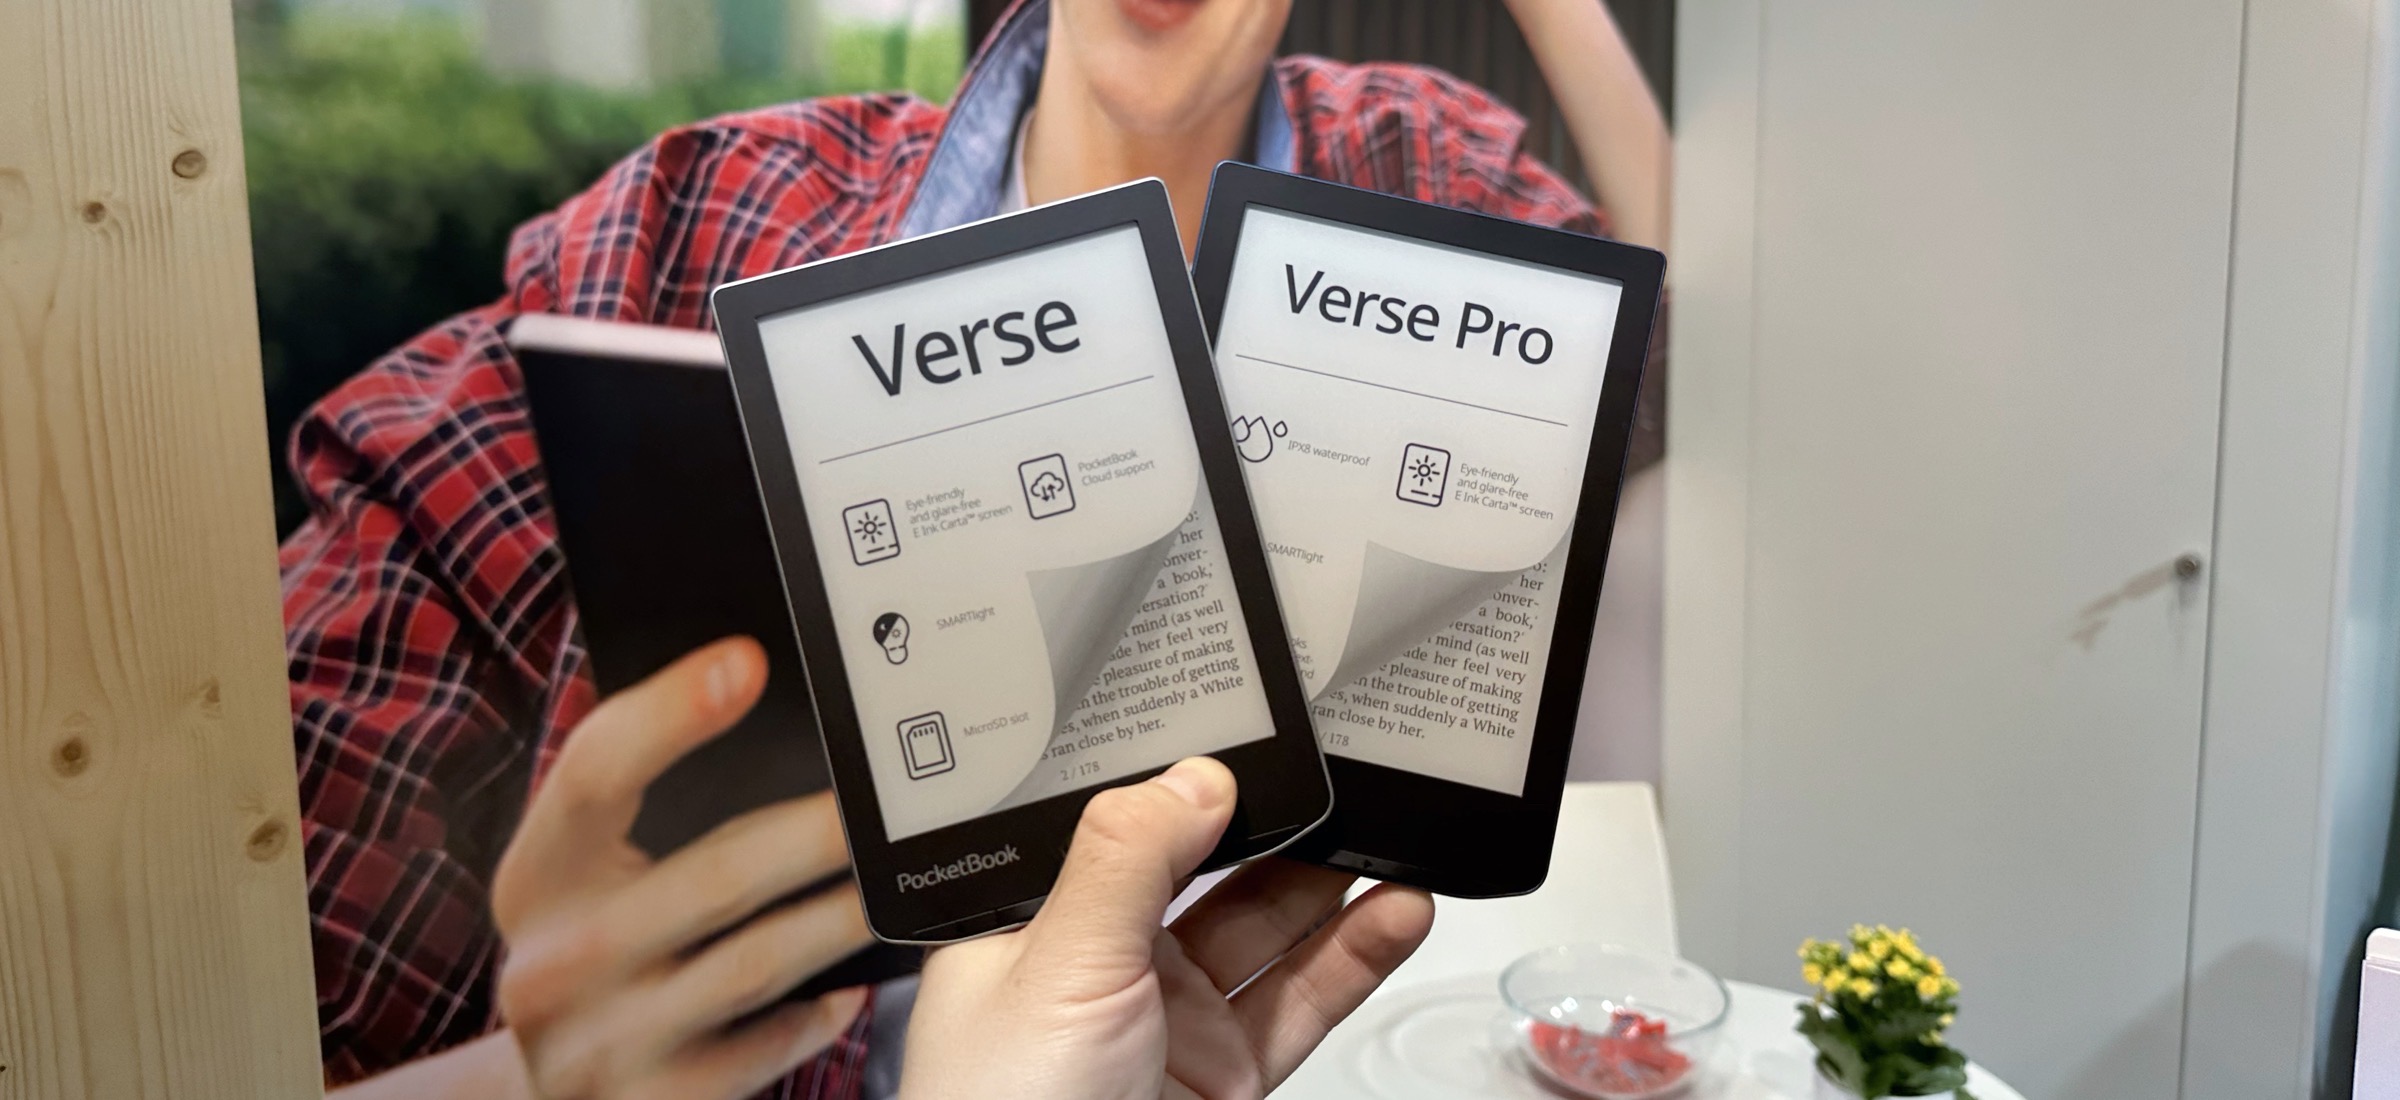 PocketBook Verse i Verse Pro - sprawdzamy nowe czytniki e-booków